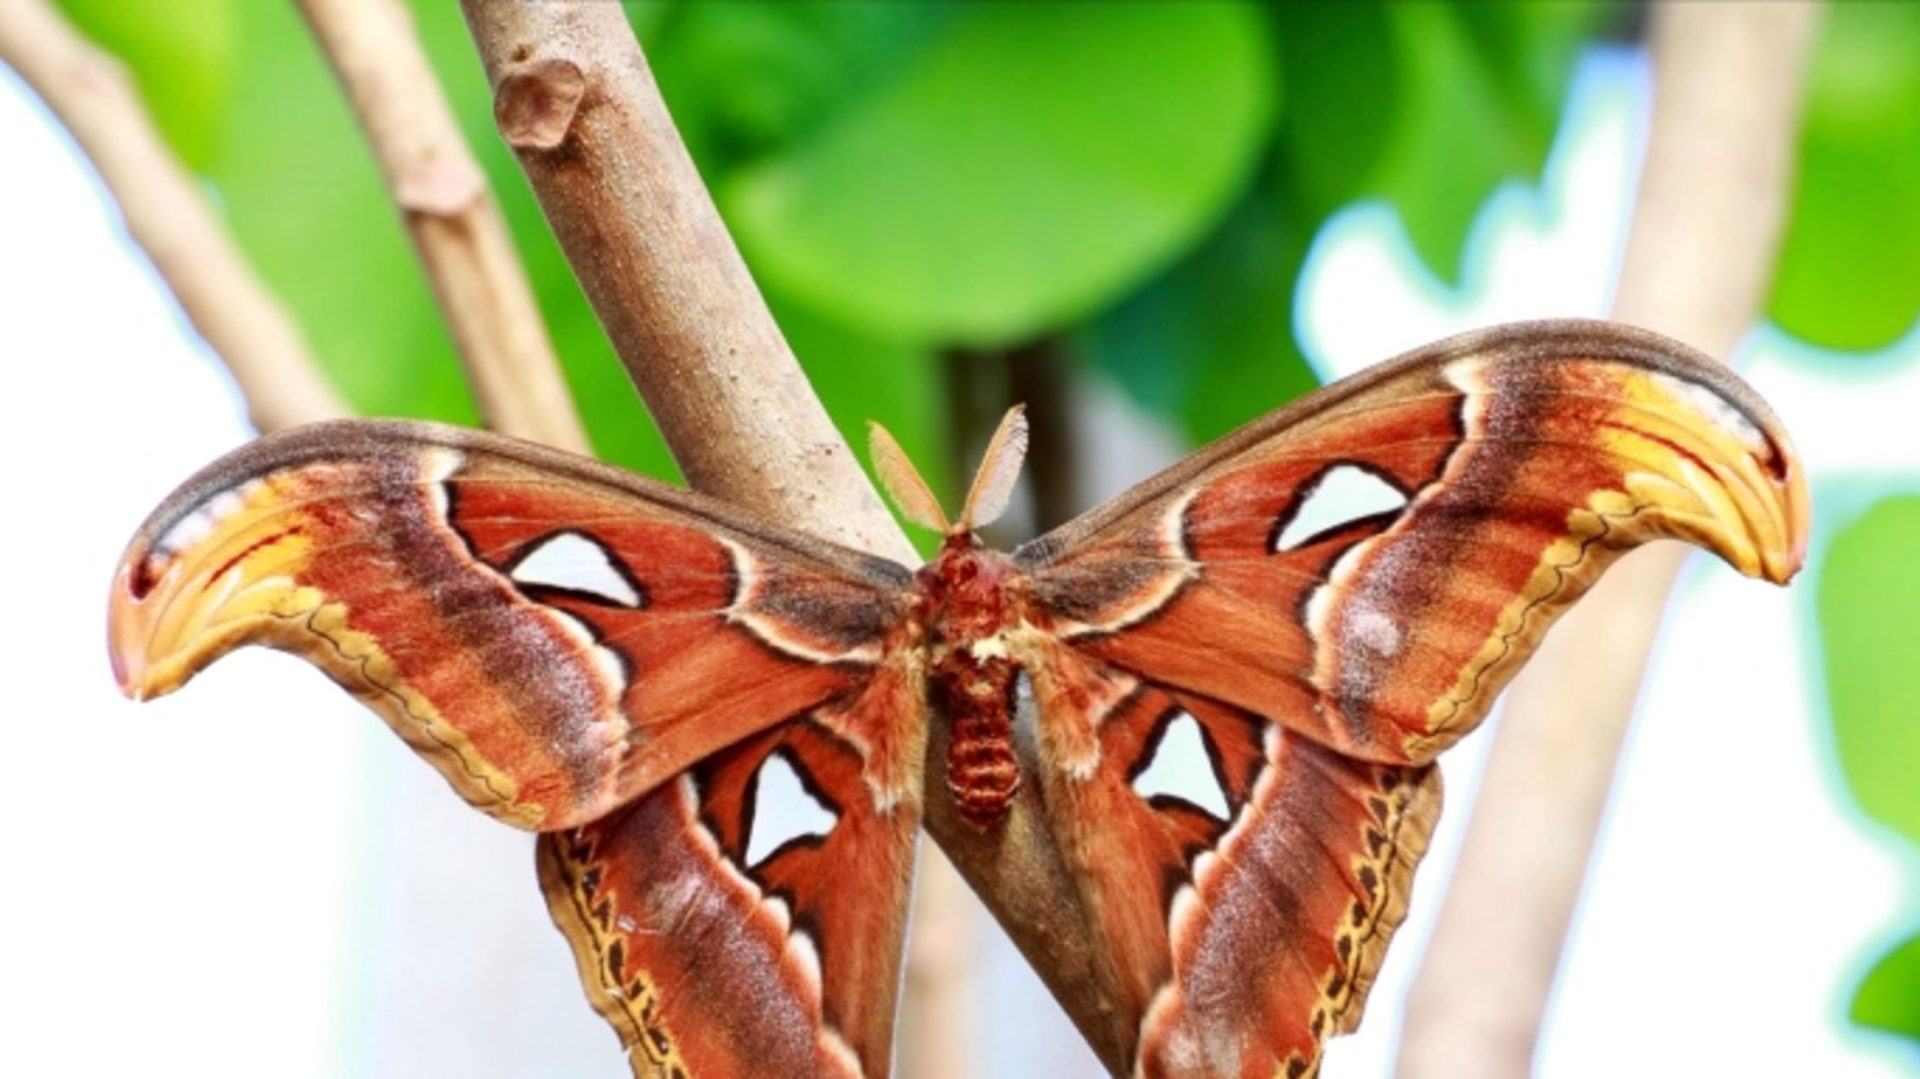 moth symbolism